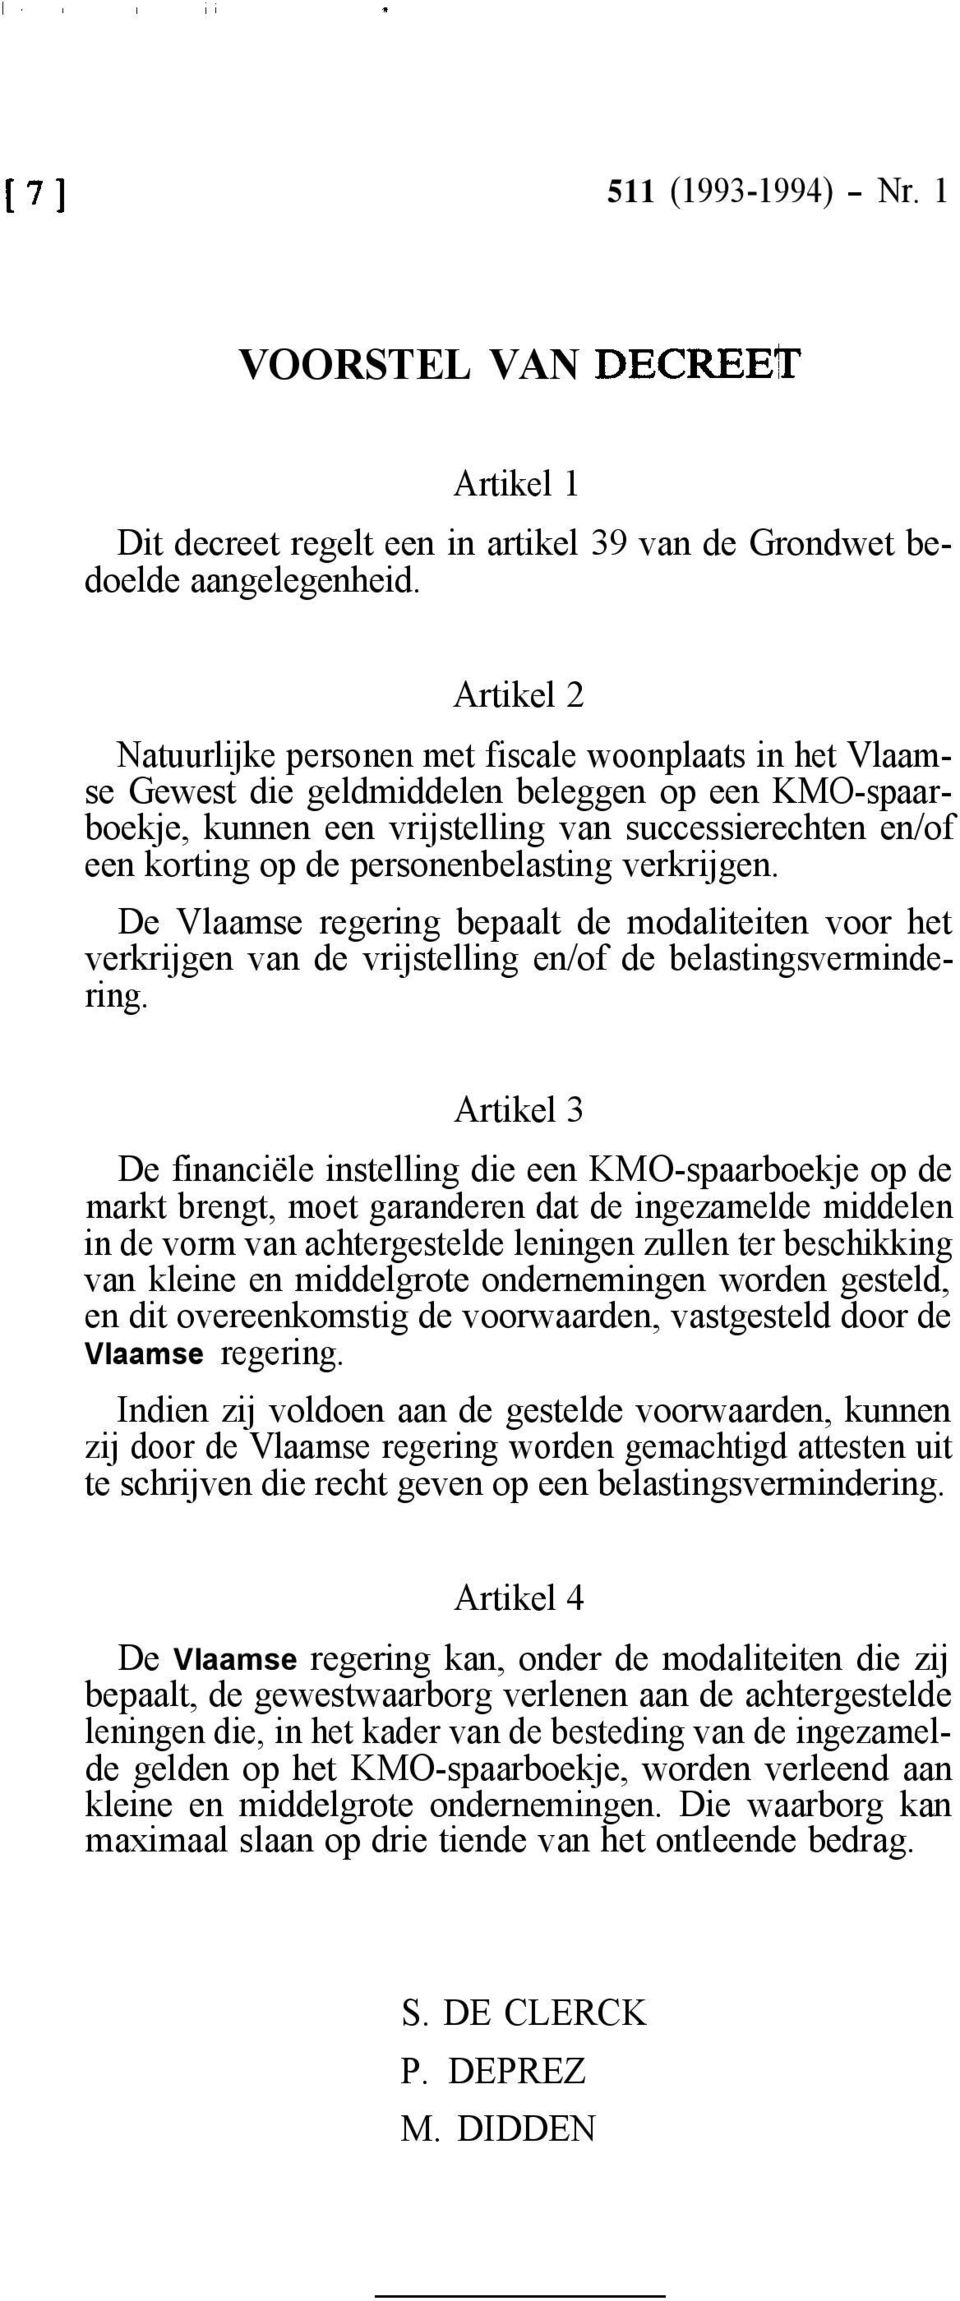 personenbelasting verkrijgen. De Vlaamse regering bepaalt de modaliteiten voor het verkrijgen van de vrijstelling en/of de belastingsvermindering.